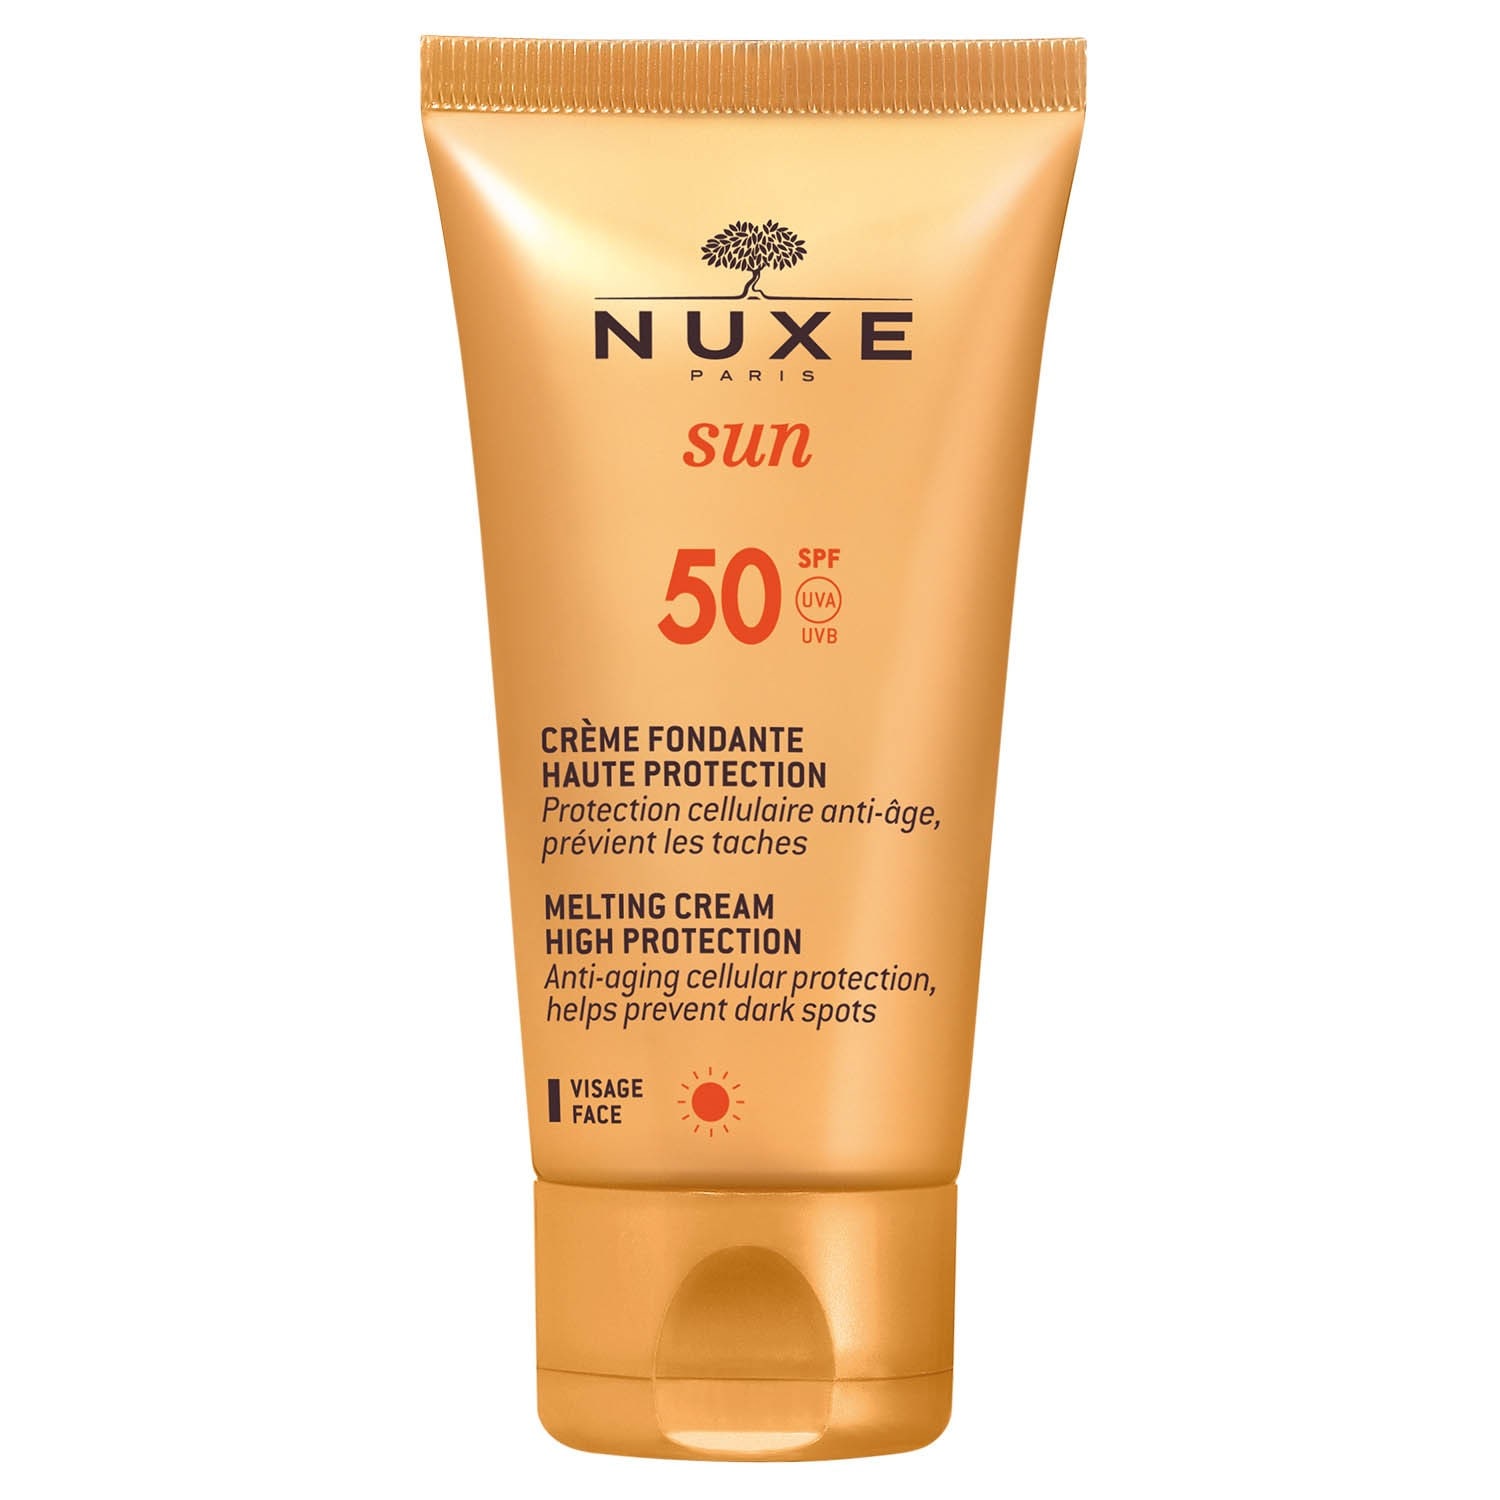 Nuxe SUN - Sunscreen Face SPF 50